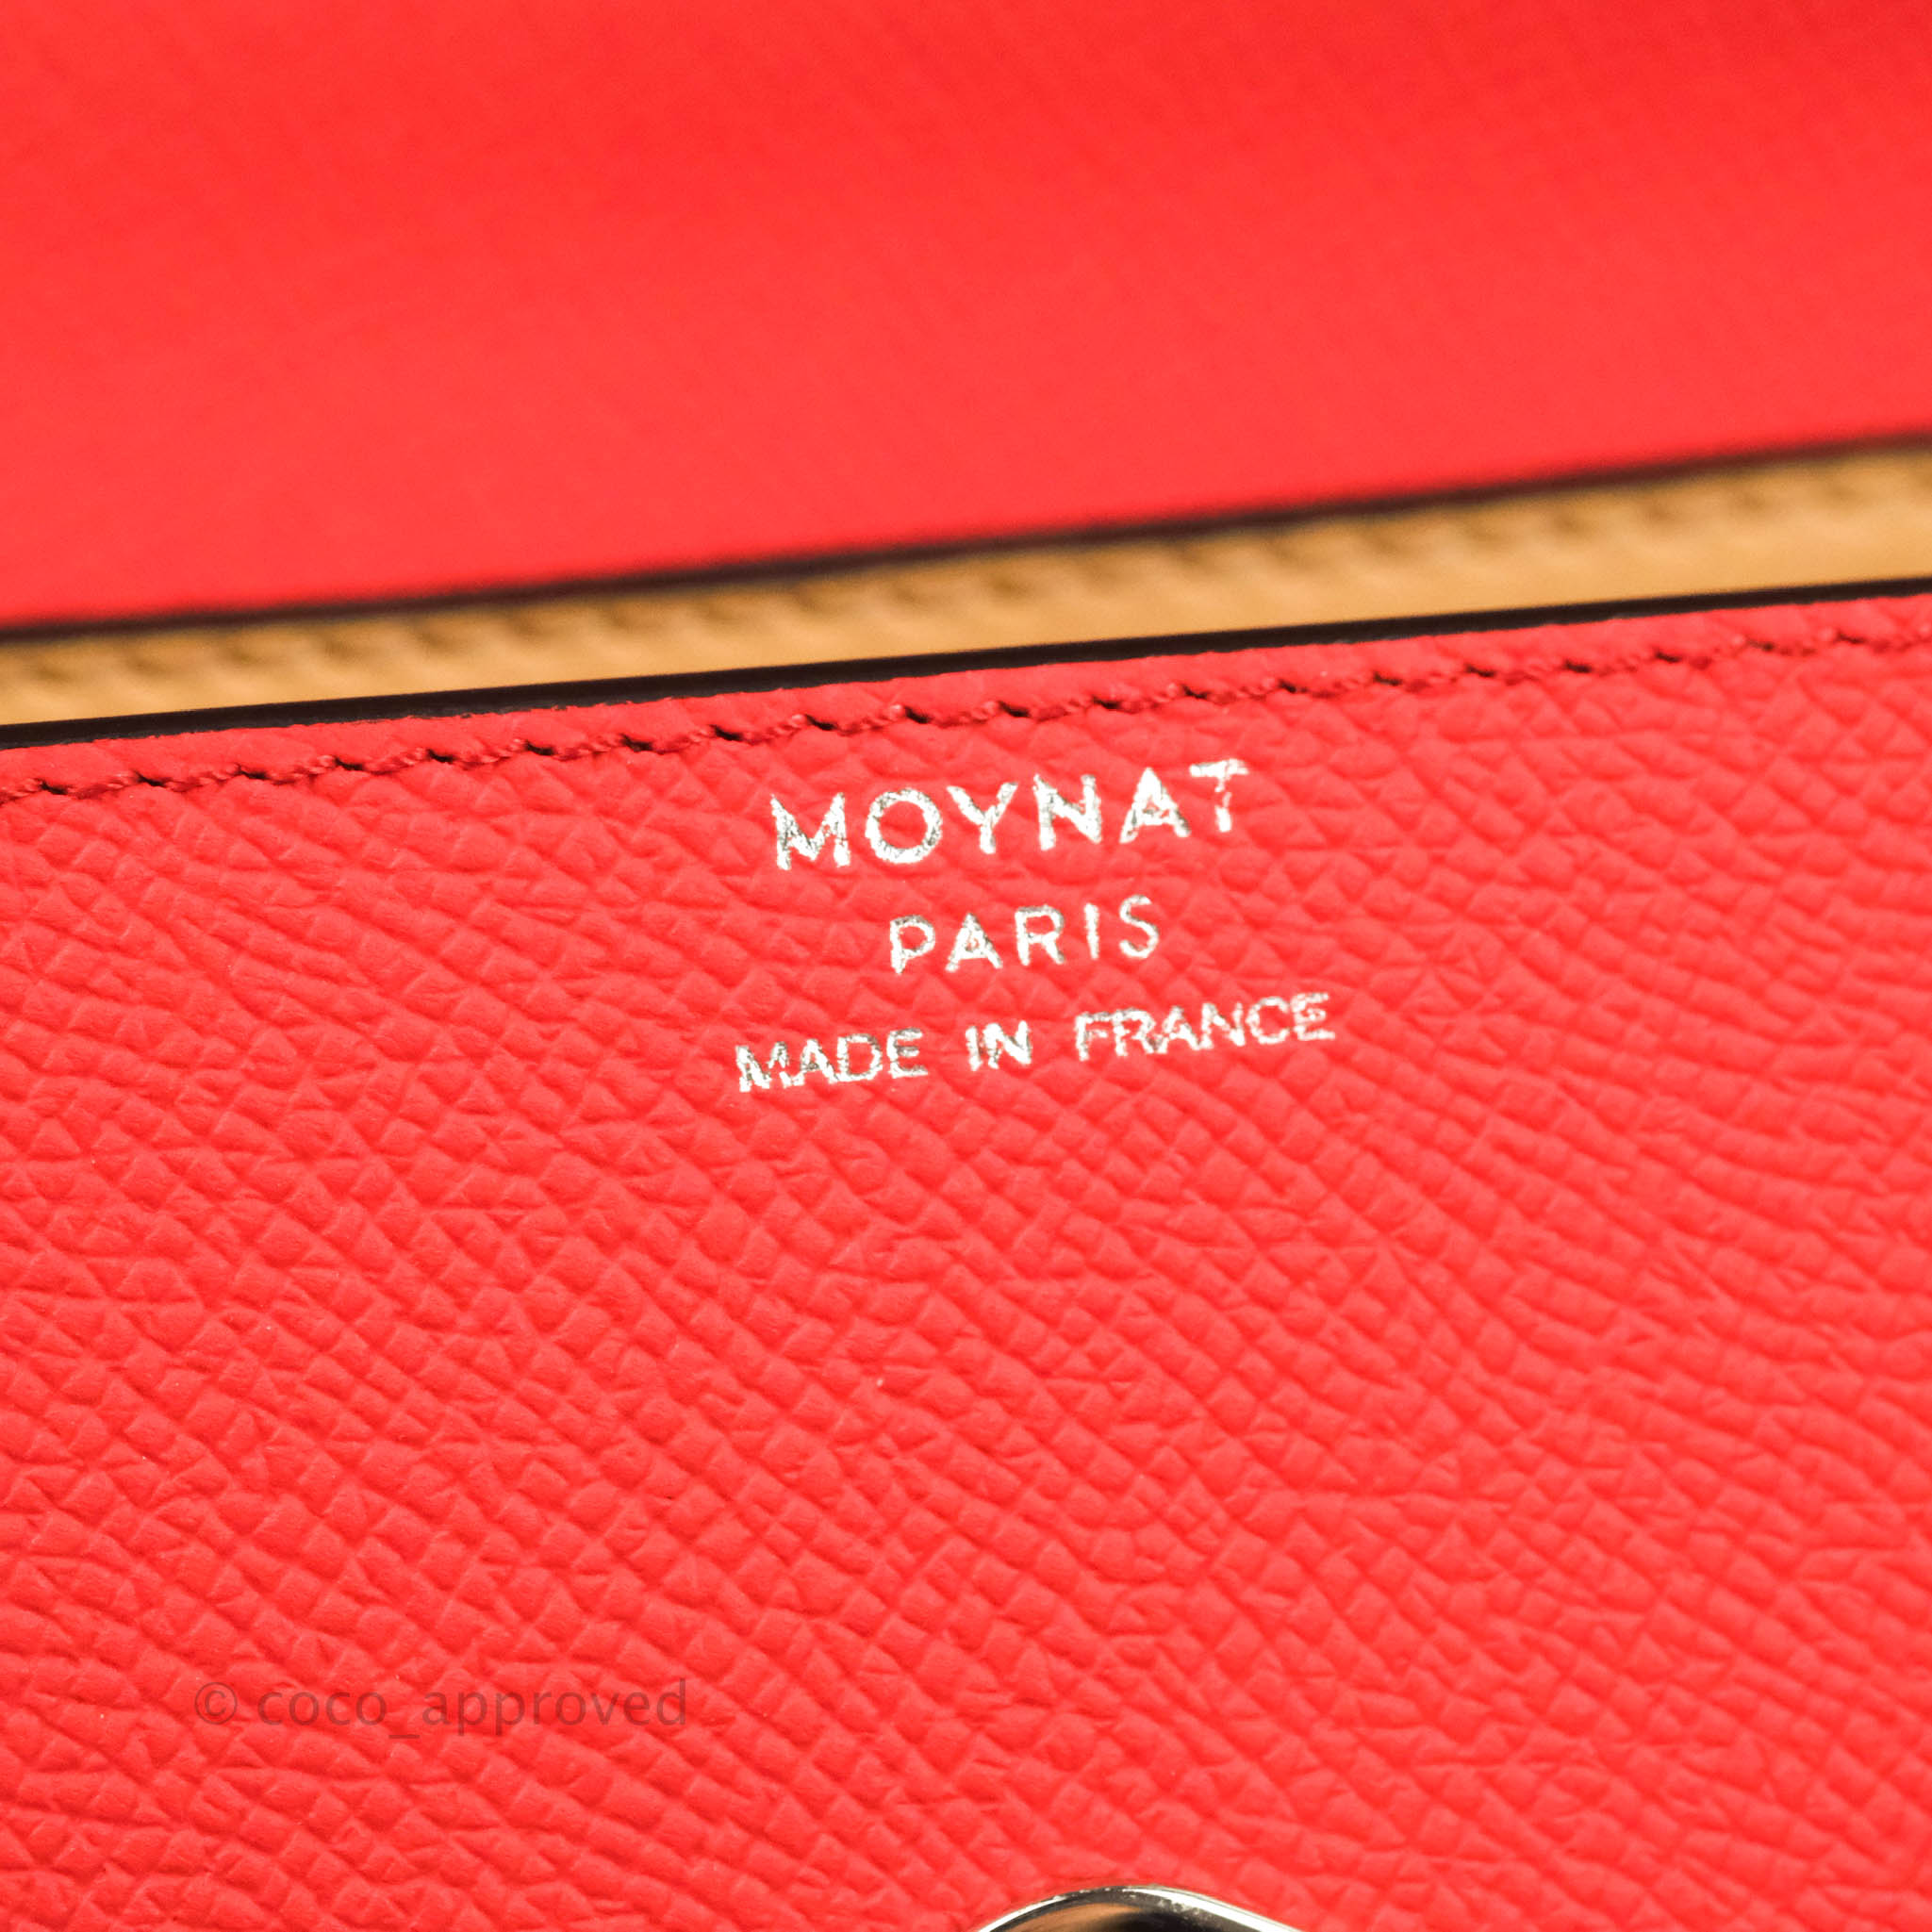 Moynat paris - leather tote - MM medium